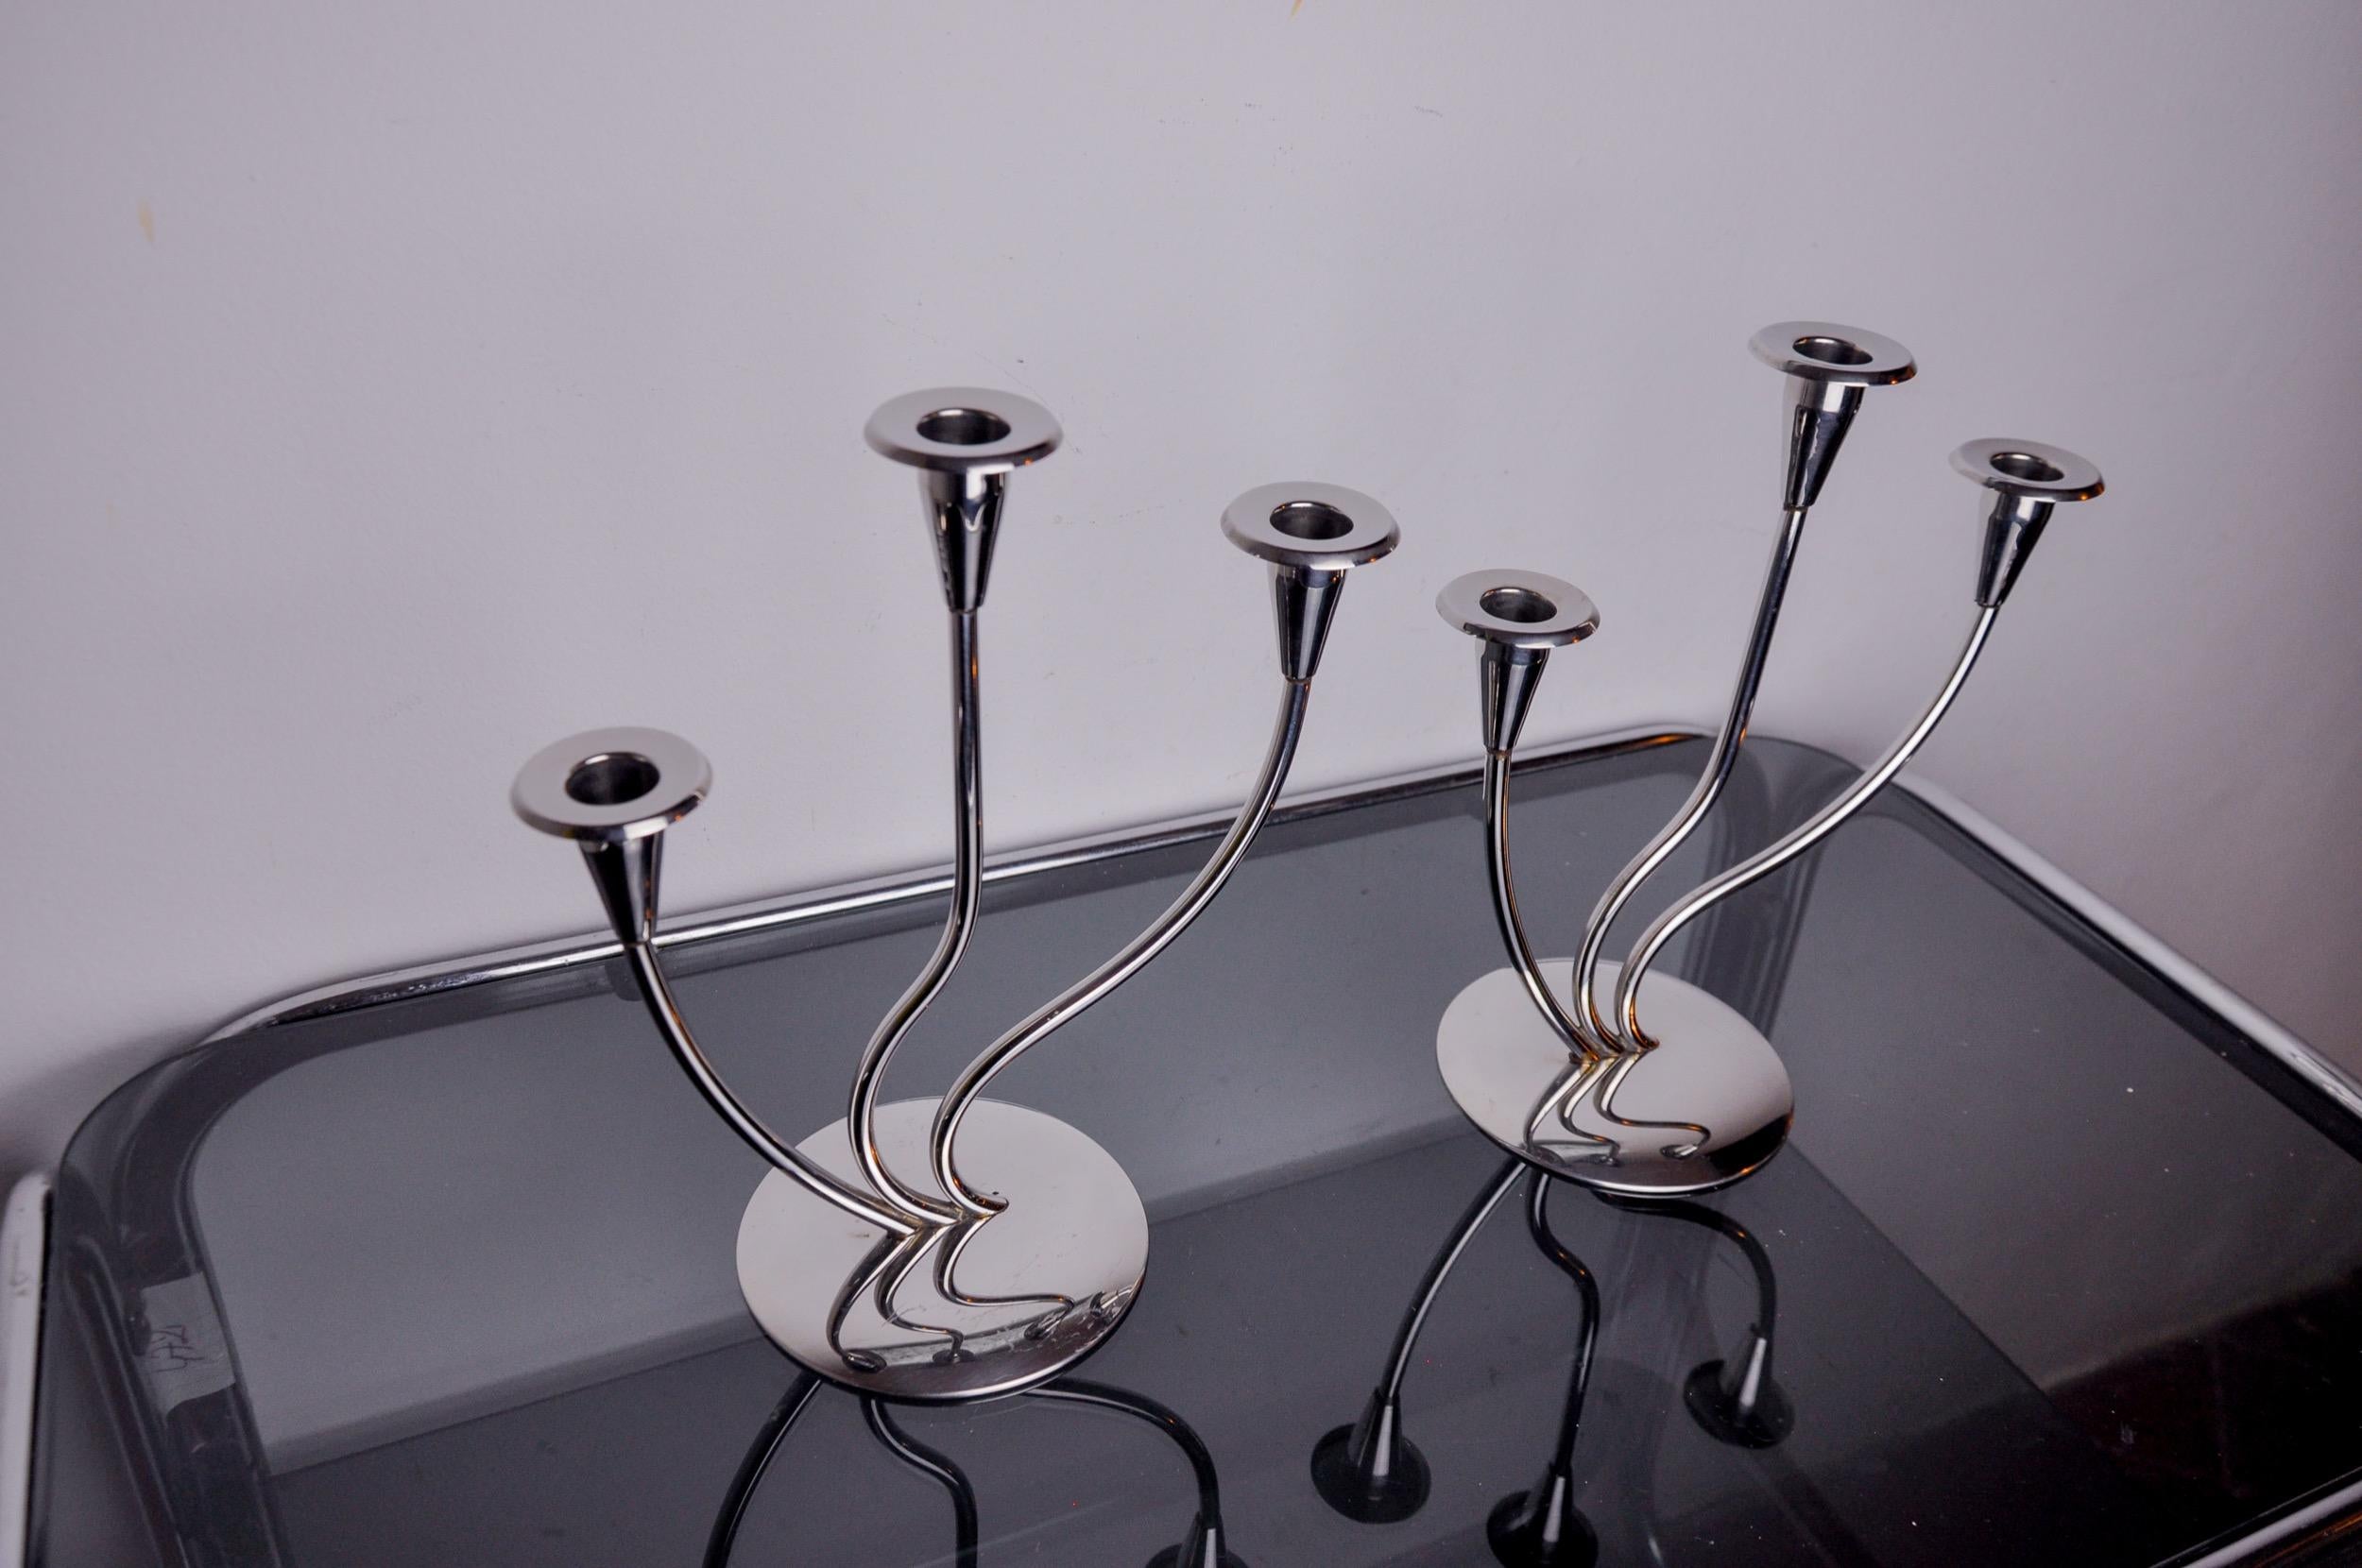 Sehr schönes Paar Art-Deco-Kerzenhalter aus rostfreiem Stahl, die in den 1970er Jahren in Spanien hergestellt wurden. Struktur aus rostfreiem Stahl 18/8, die 3 Kerzen aufnehmen kann. Hervorragendes Designobjekt, das Ihr Interieur wunderbar